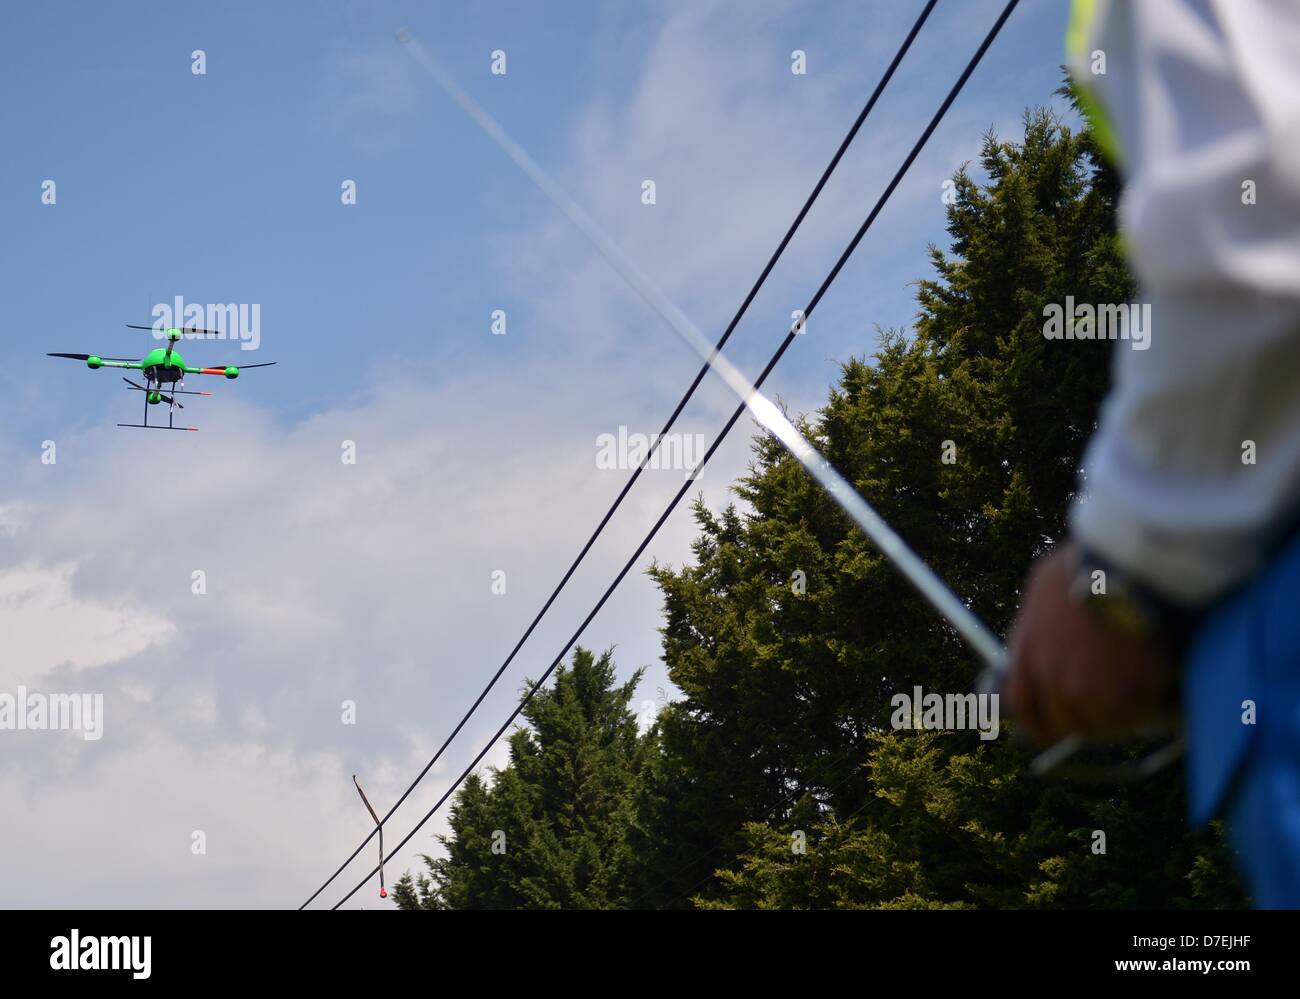 Drone pilota controlla il volo del suo drone a Berlino, Germania, 06 maggio 2013. Il controllo remoto elicottero è supposto di applicare il DNA artificiale a cavi di società di telecomunicazioni Telekom al fine di prevenire furti di rame. Foto: BRITTA PEDERSEN Foto Stock